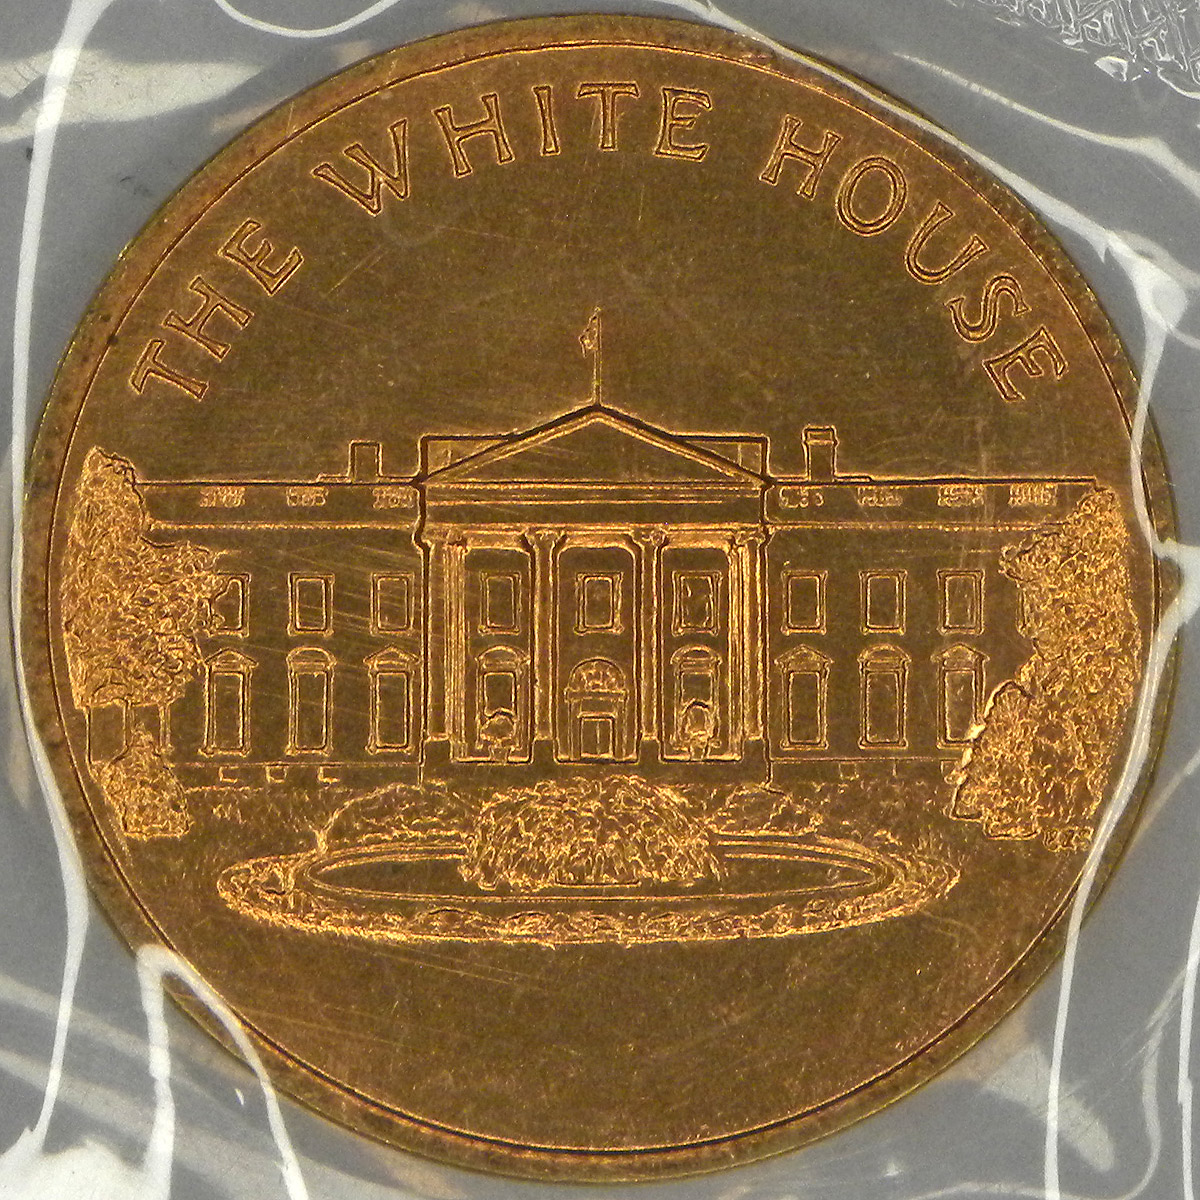 White House medal (obverse)